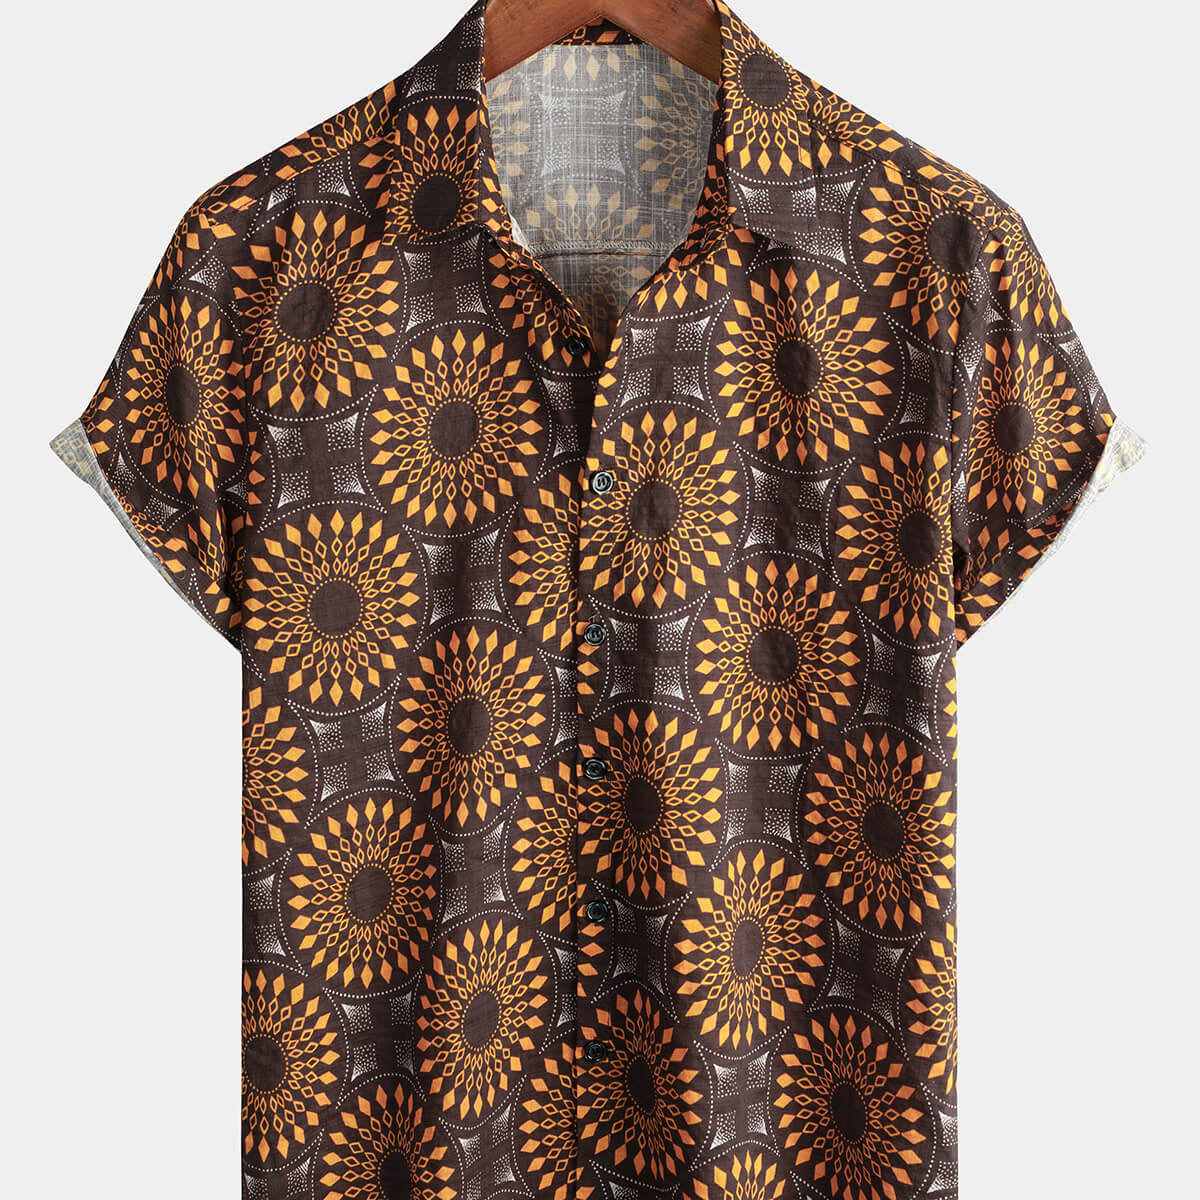 Camisa vintage de algodón de los años 70 para hombre, color marrón, floral, retro, occidental, de manga corta, con botones